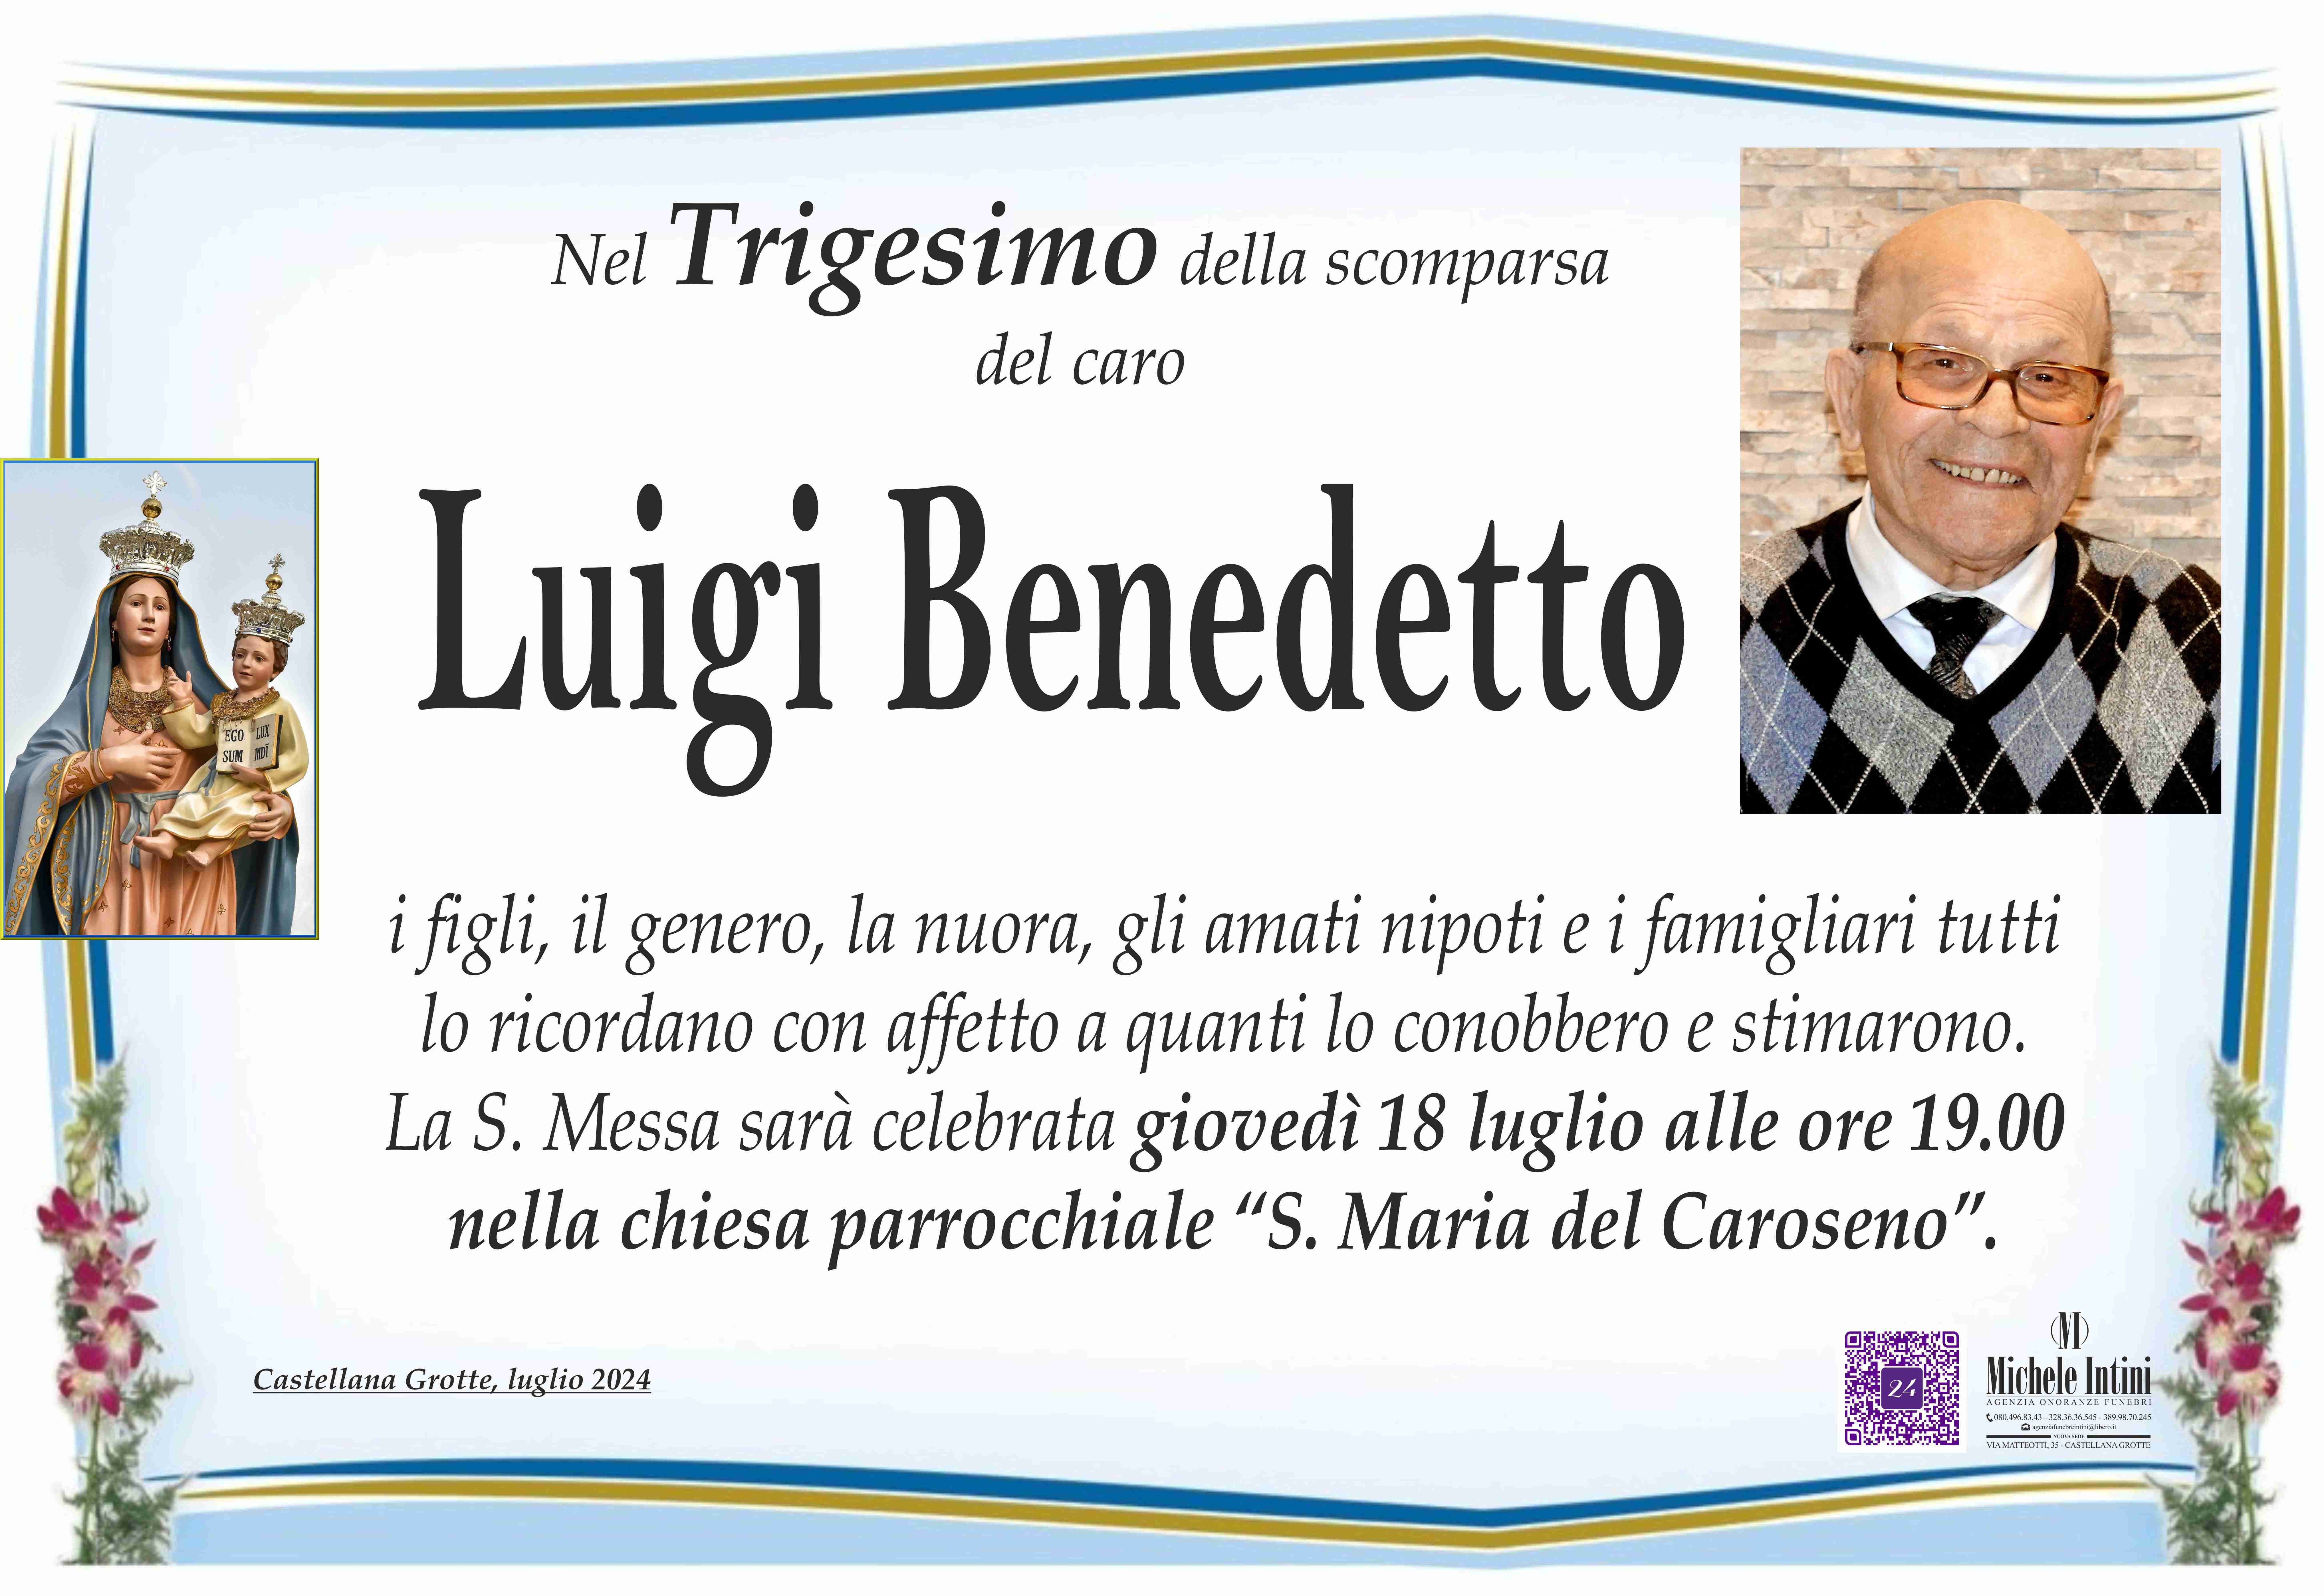 Luigi Benedetto